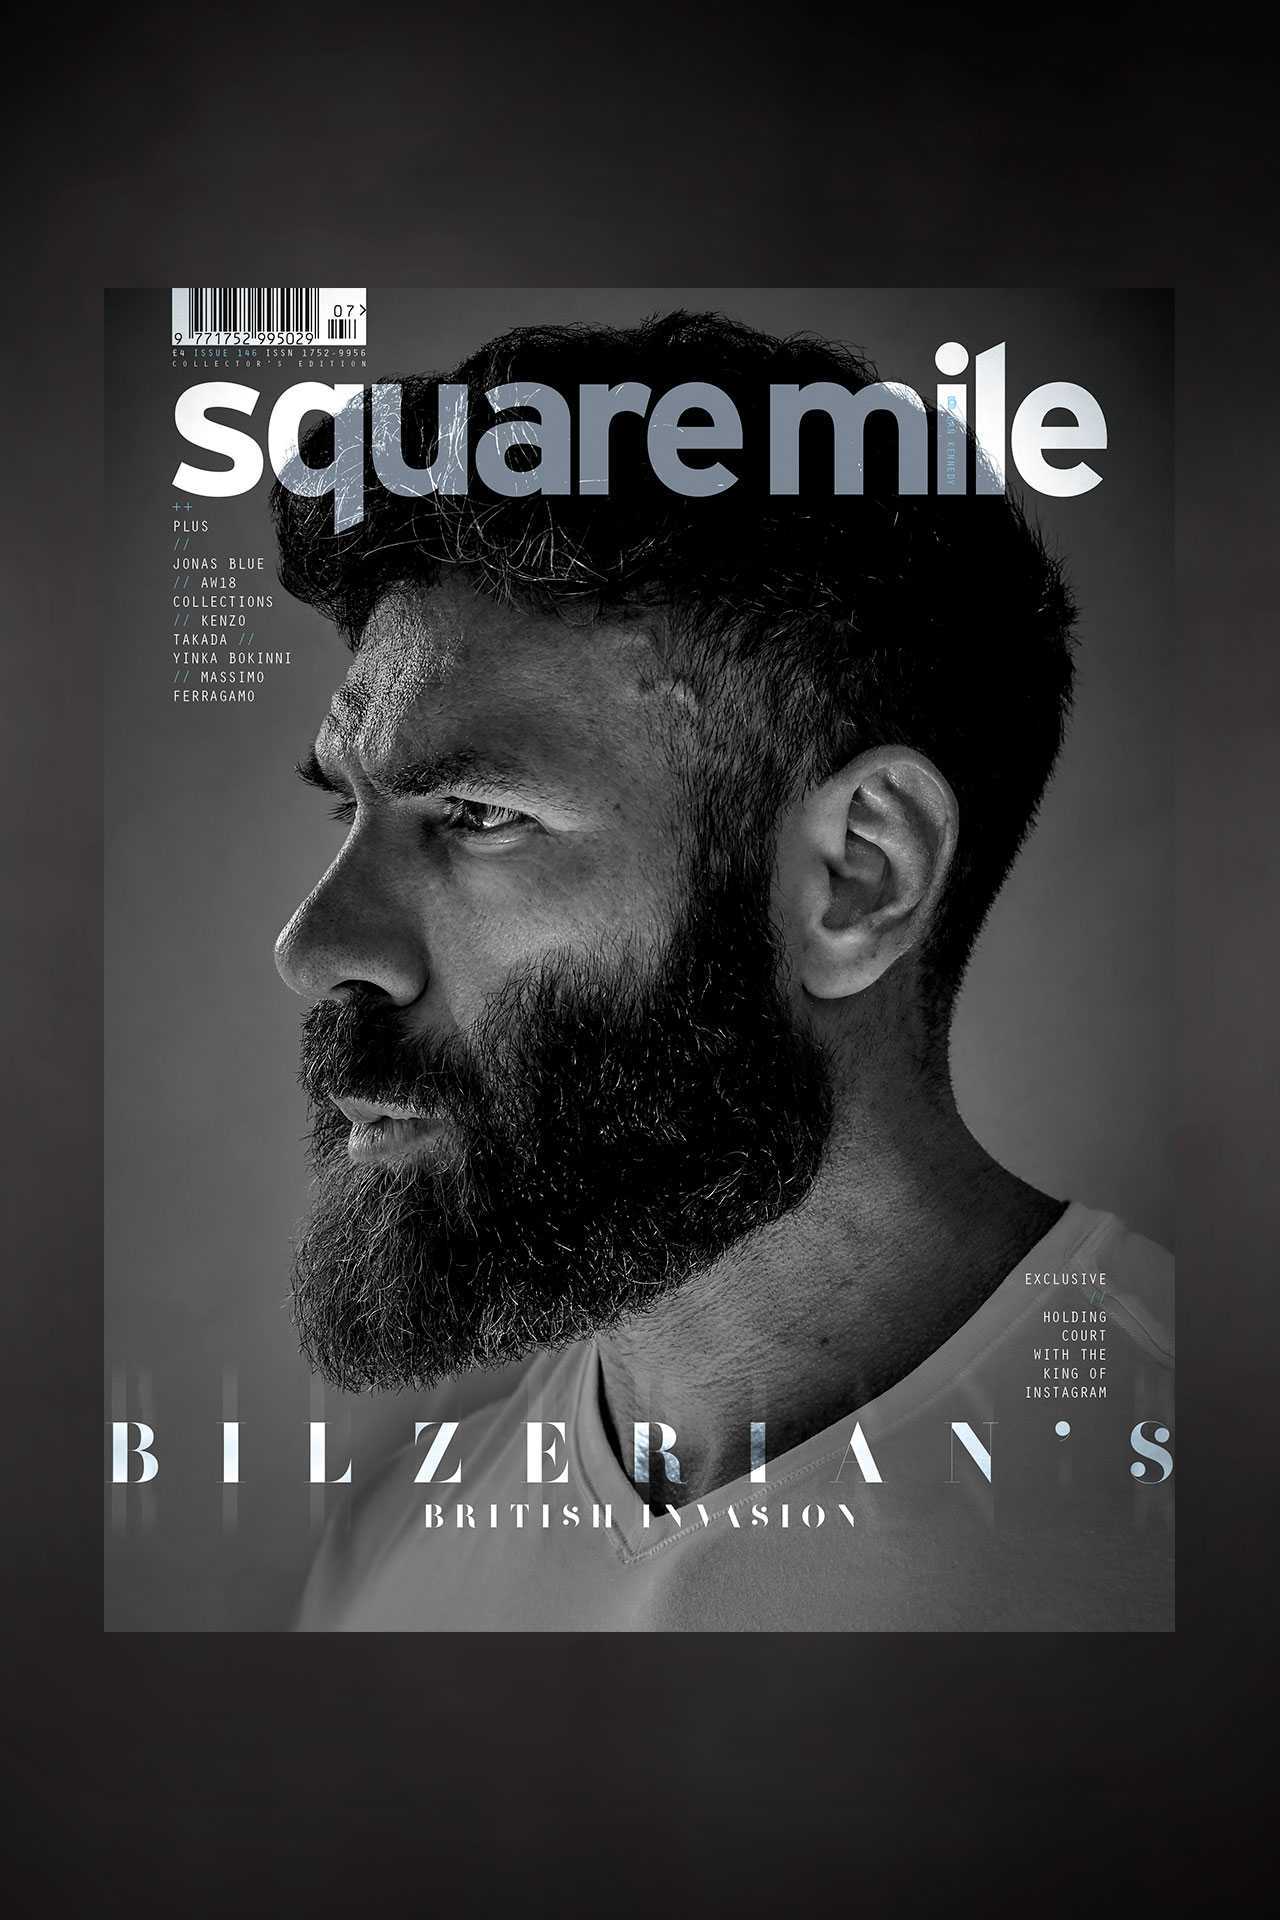 Dan Bilzerian for Square Mile